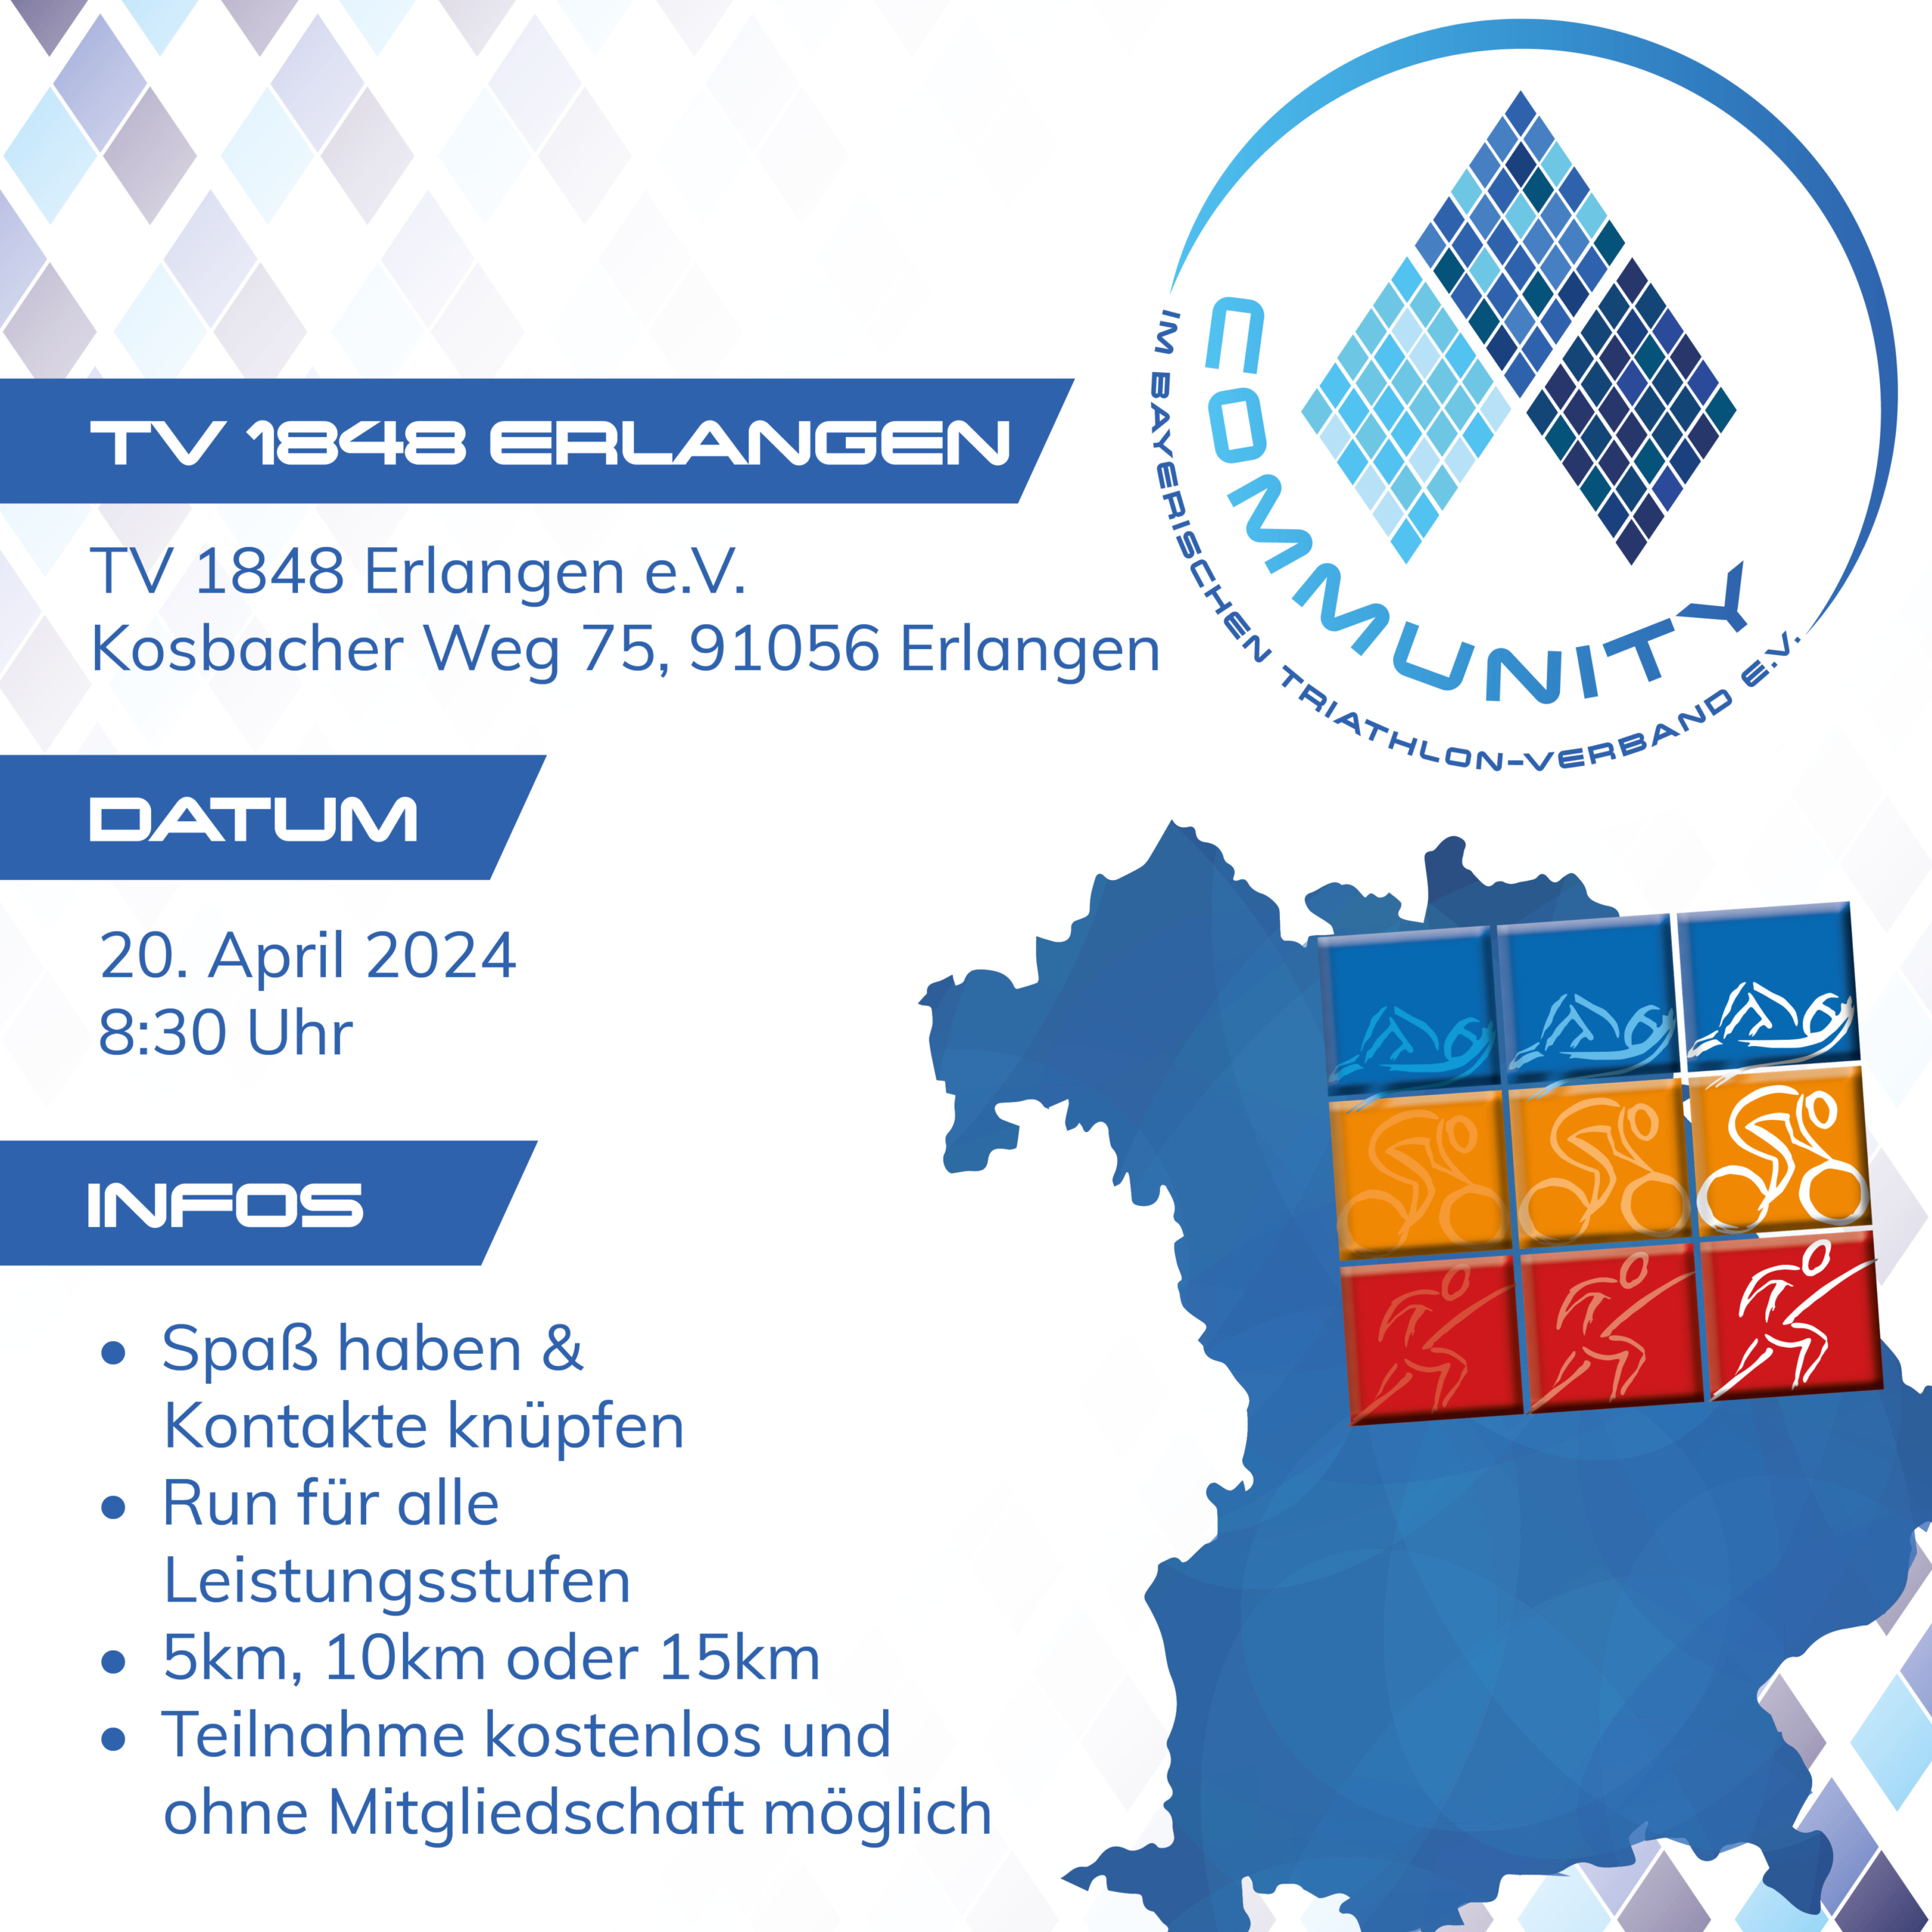 Werbung zum BTV Community Event in Erlangen